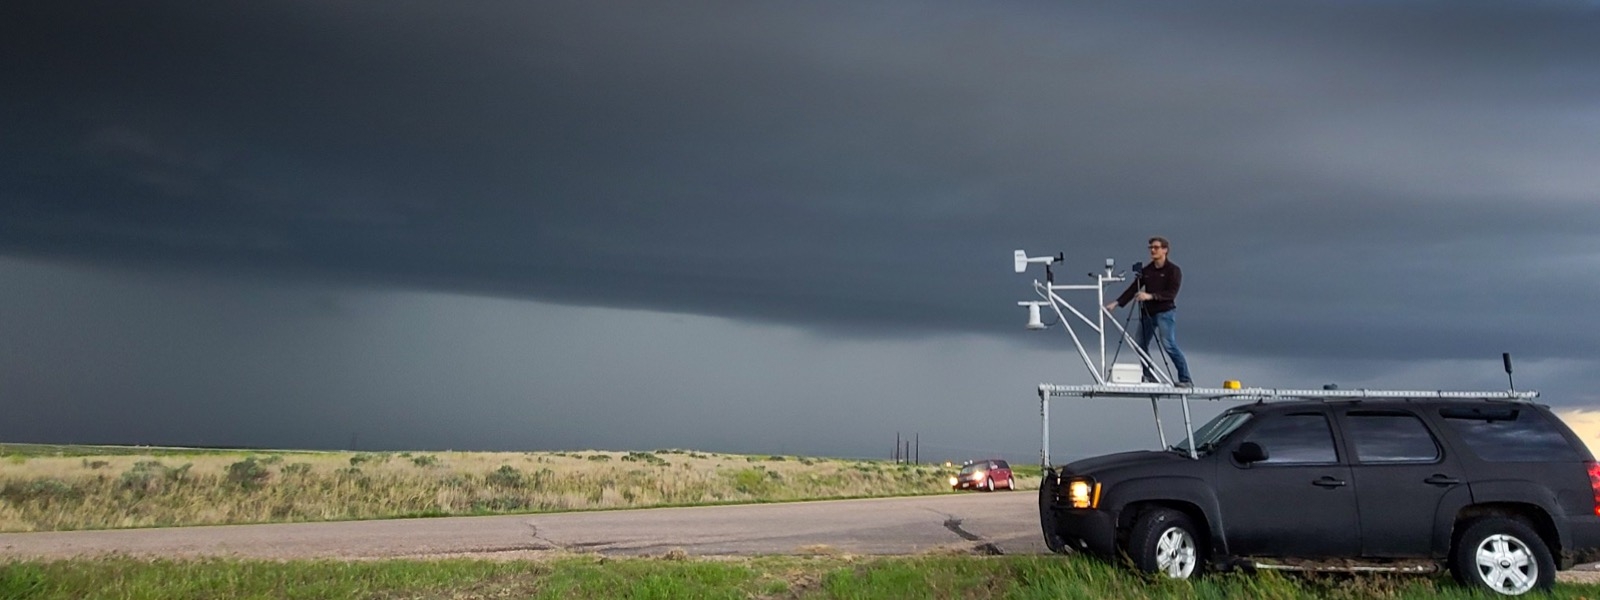 ARCS Scholar TJ Corrigan atop storm chase car